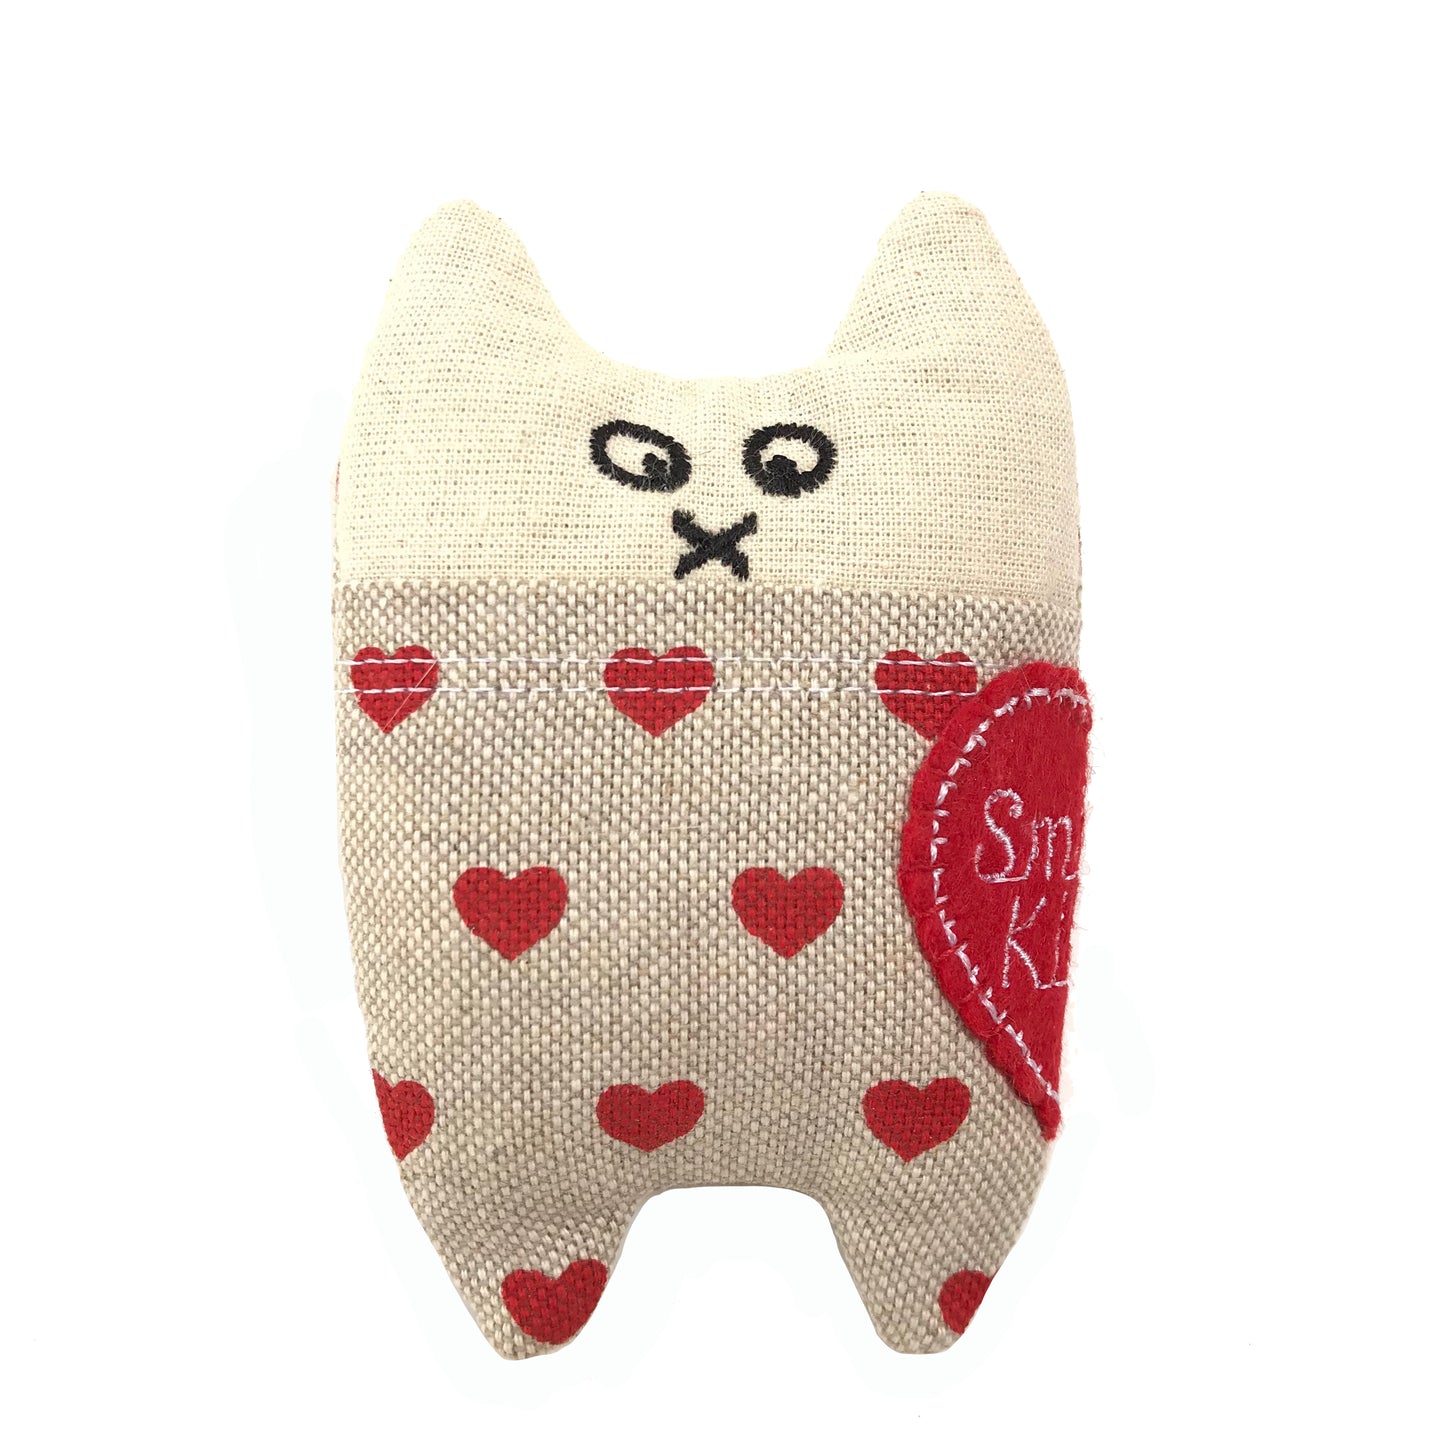 Freak Meowt Luxury Cat Toys, Gifts for Cats Smitten Kitten, Best Cat toys, Handmade in Wales